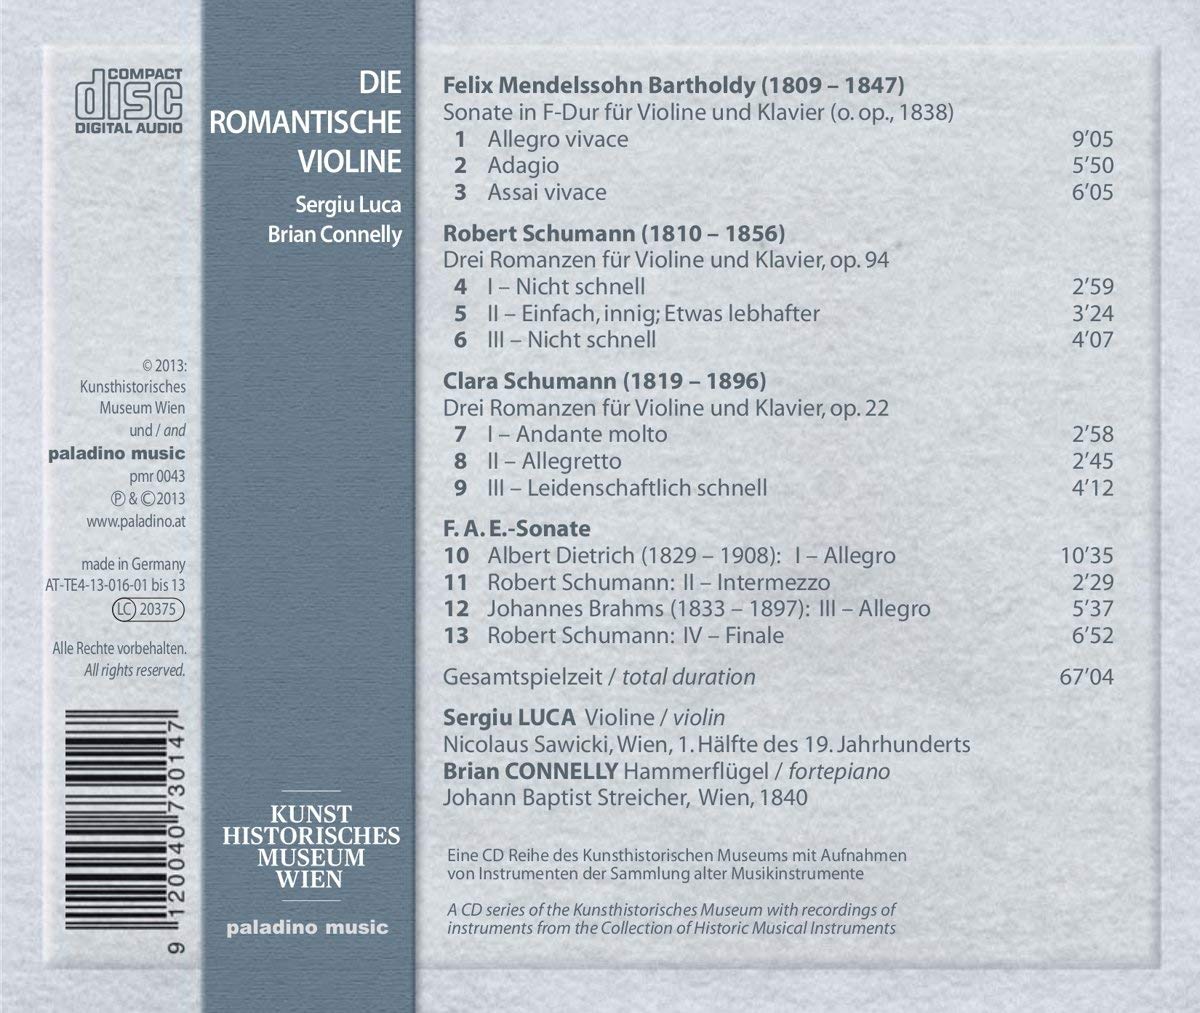 Die Romantische Violine - Mendelssohn, Clara Schumann, Brahms, Robert Schumann, A. Dietrich - slide-1